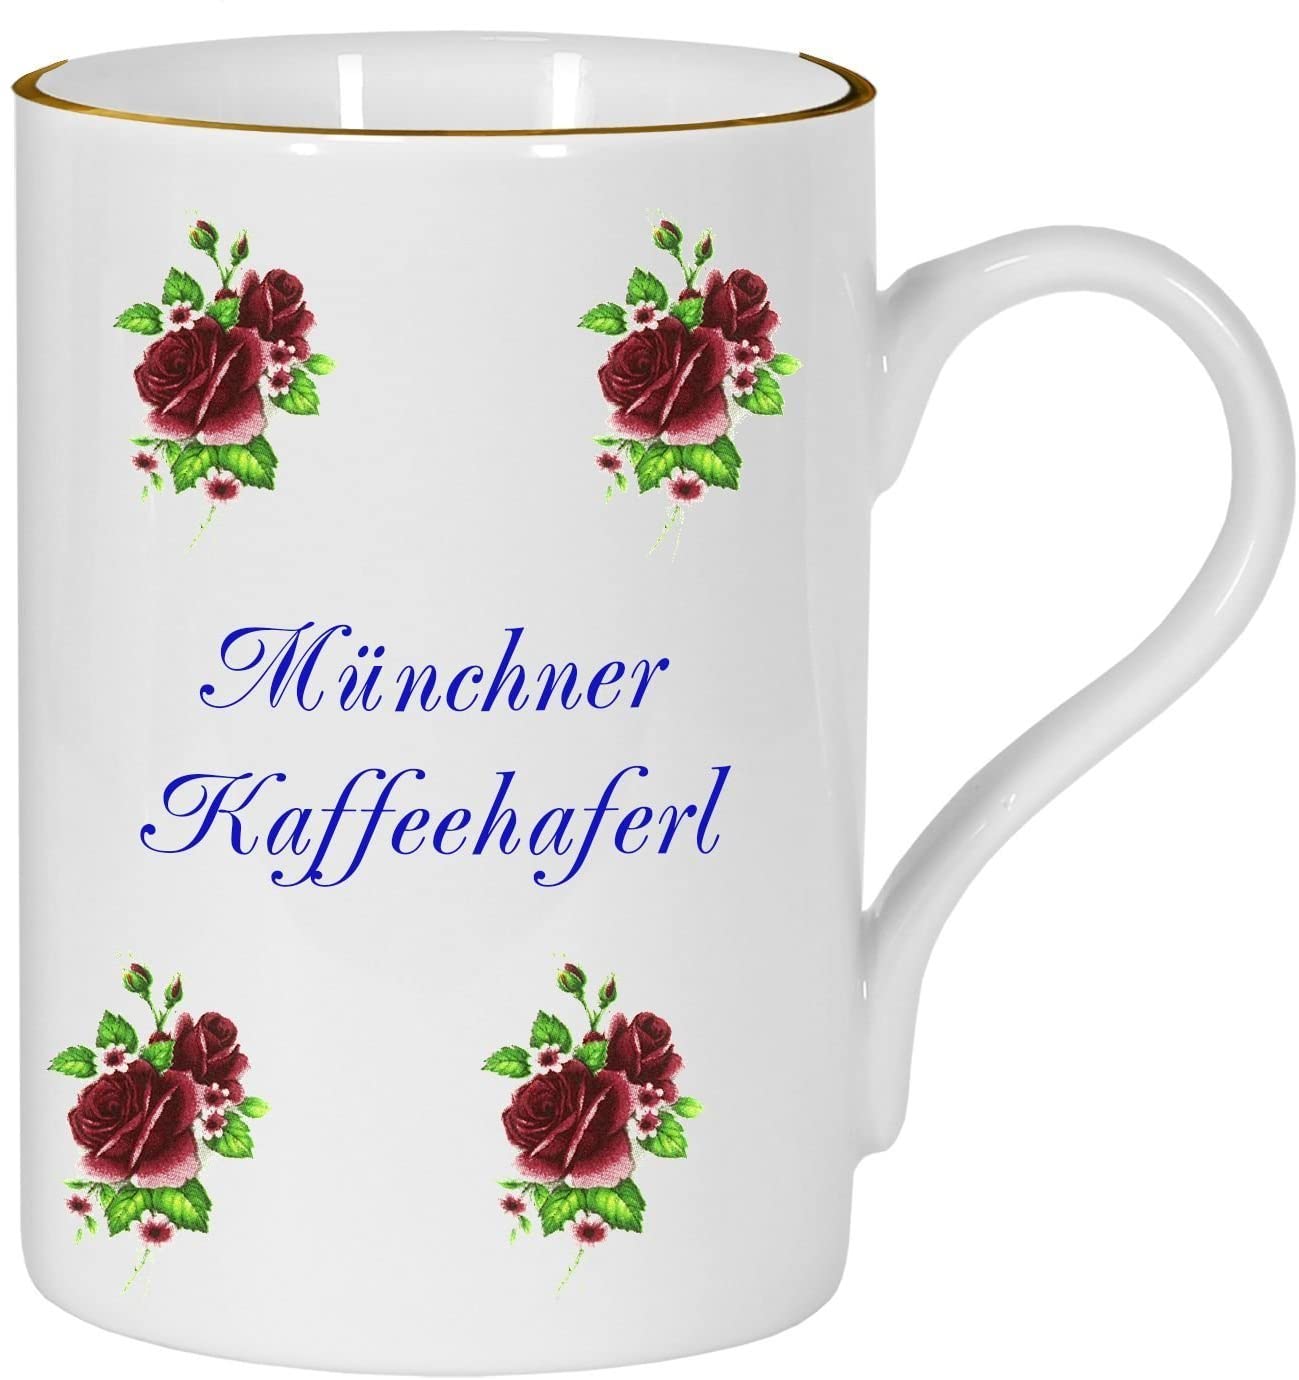 Porzellan - Tasse, Kaffeepott, Becher- München- Motiv Rosen gestreut